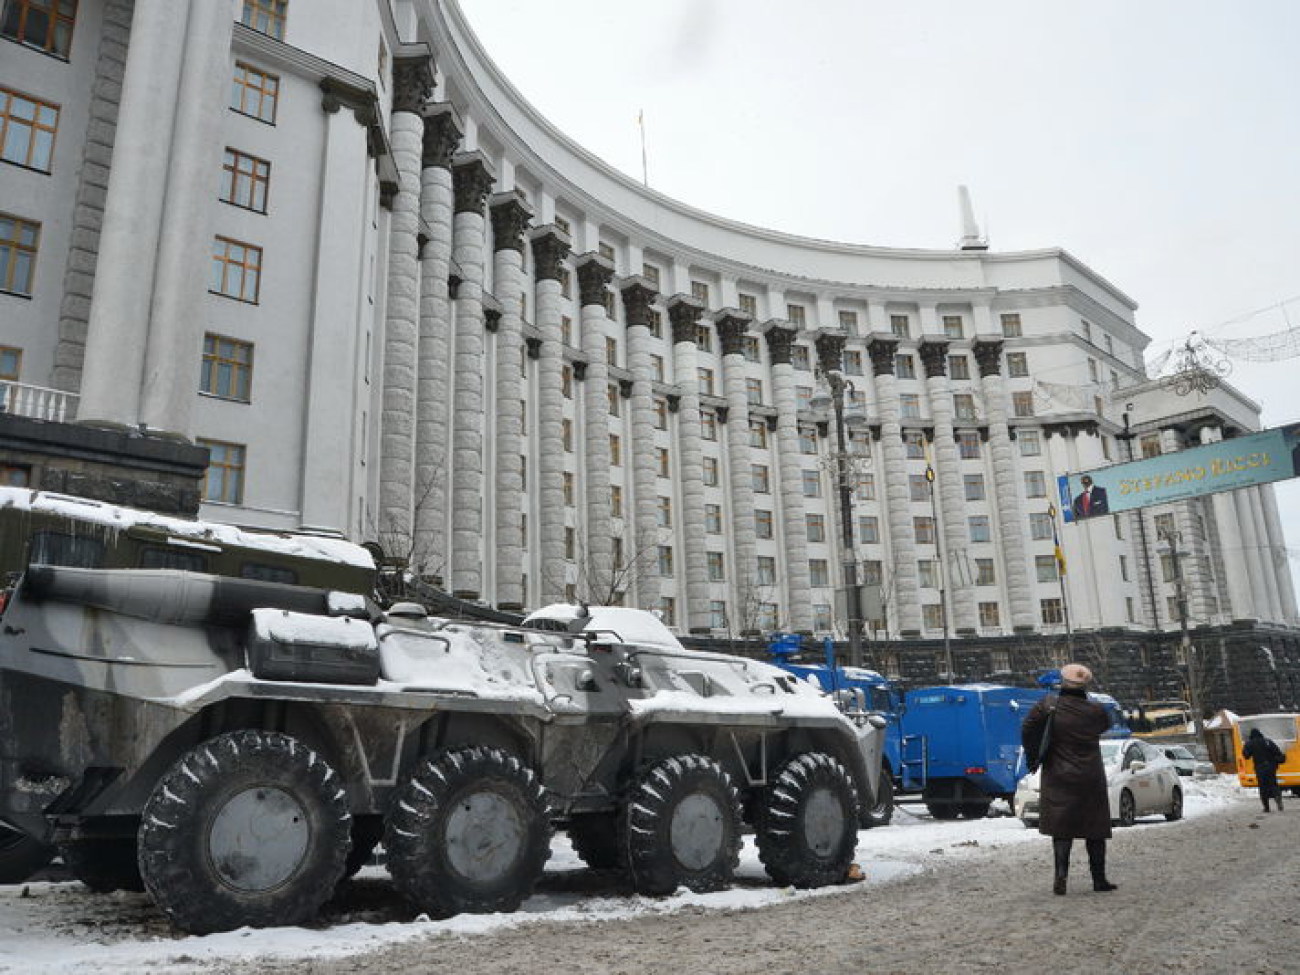 Арбузов принимал Кабмин под БТРы и водометы, 29 января 2014г.